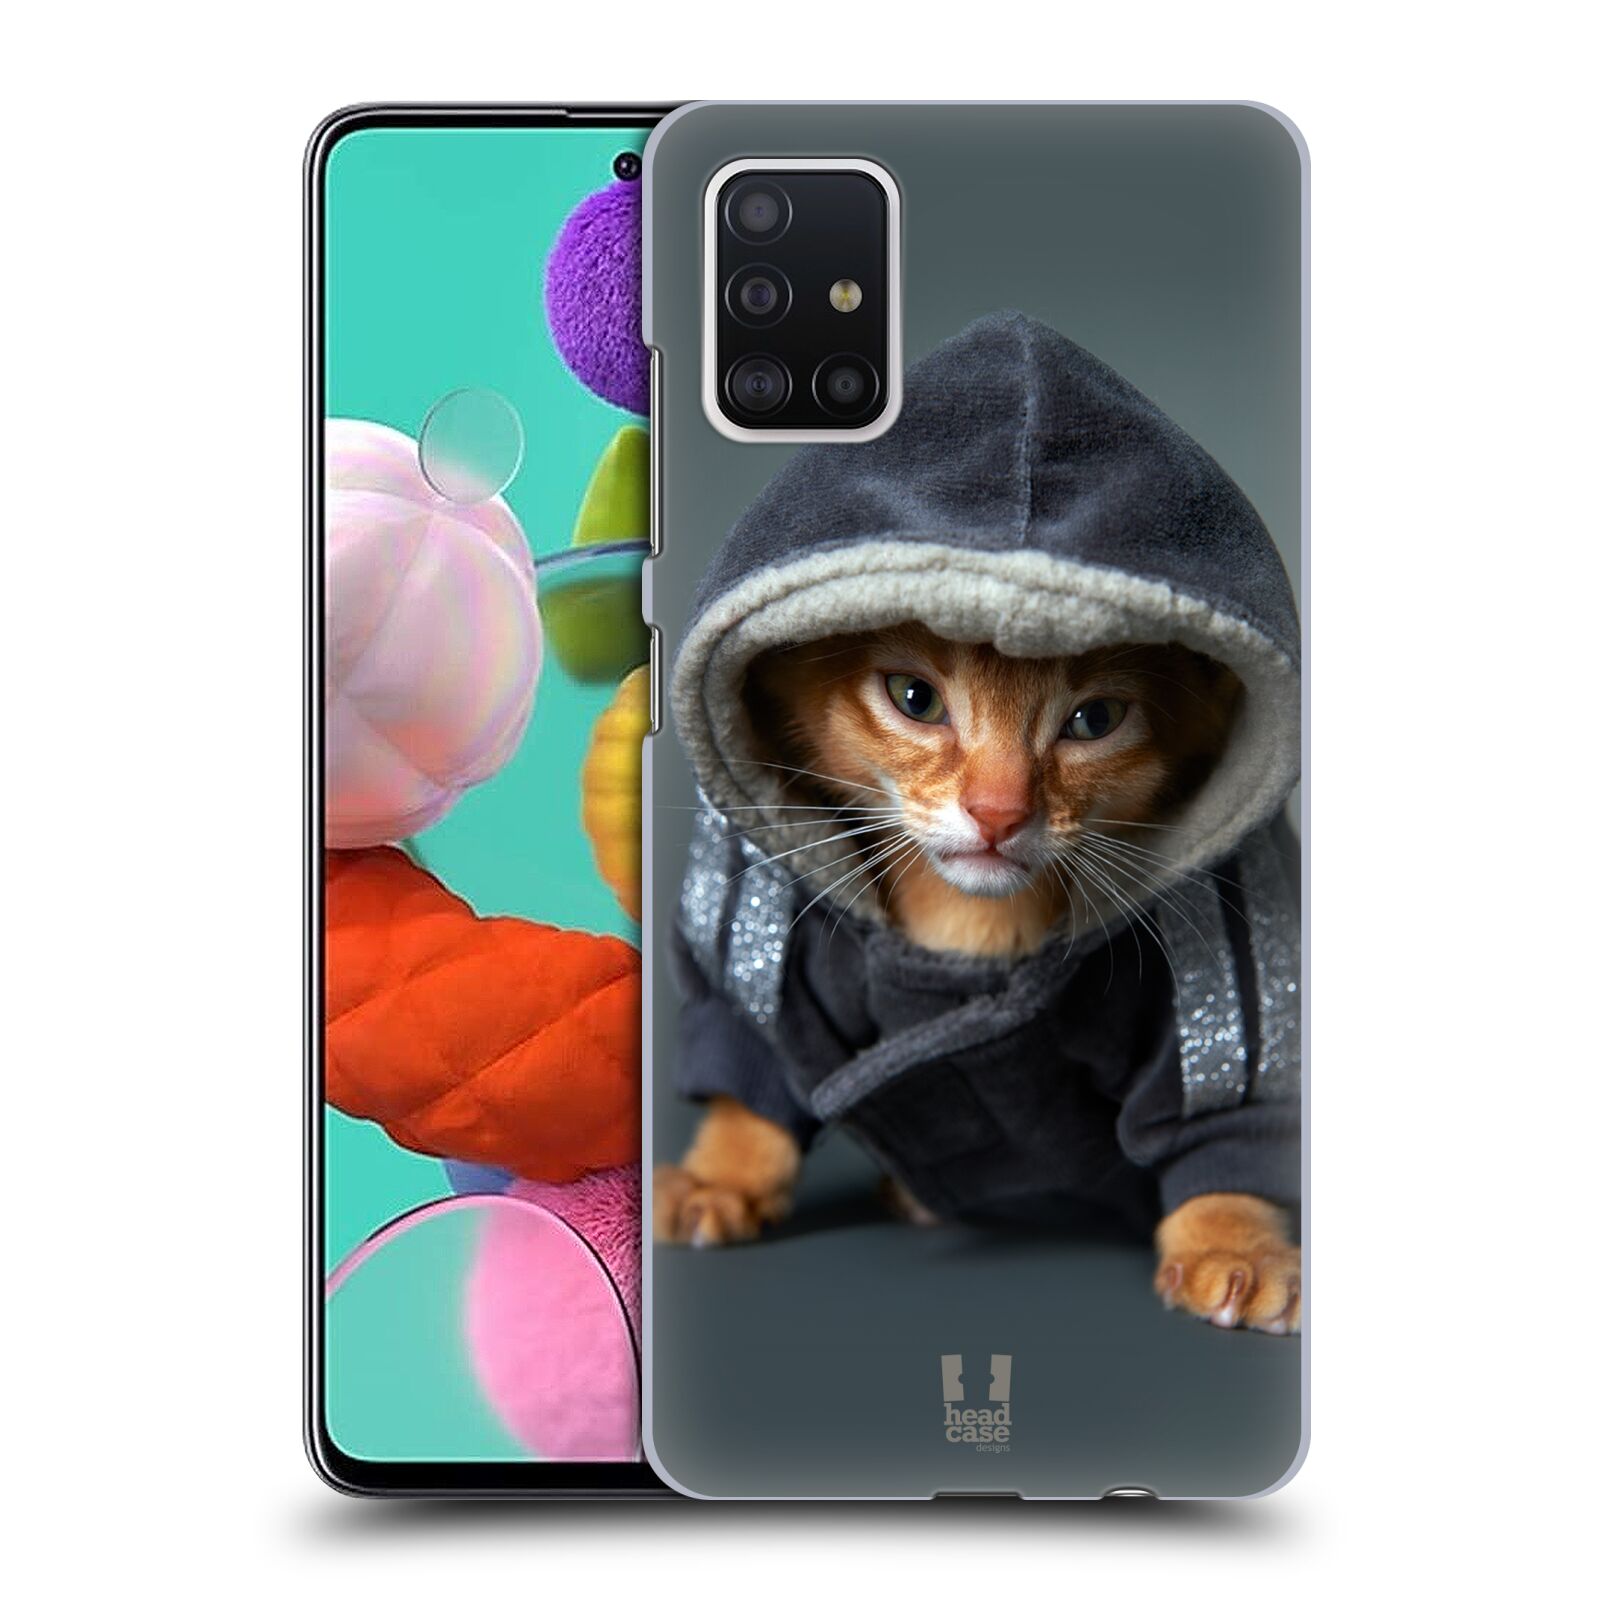 Pouzdro na mobil Samsung Galaxy A51 - HEAD CASE - vzor Legrační zvířátka kotě/kočička s kapucí